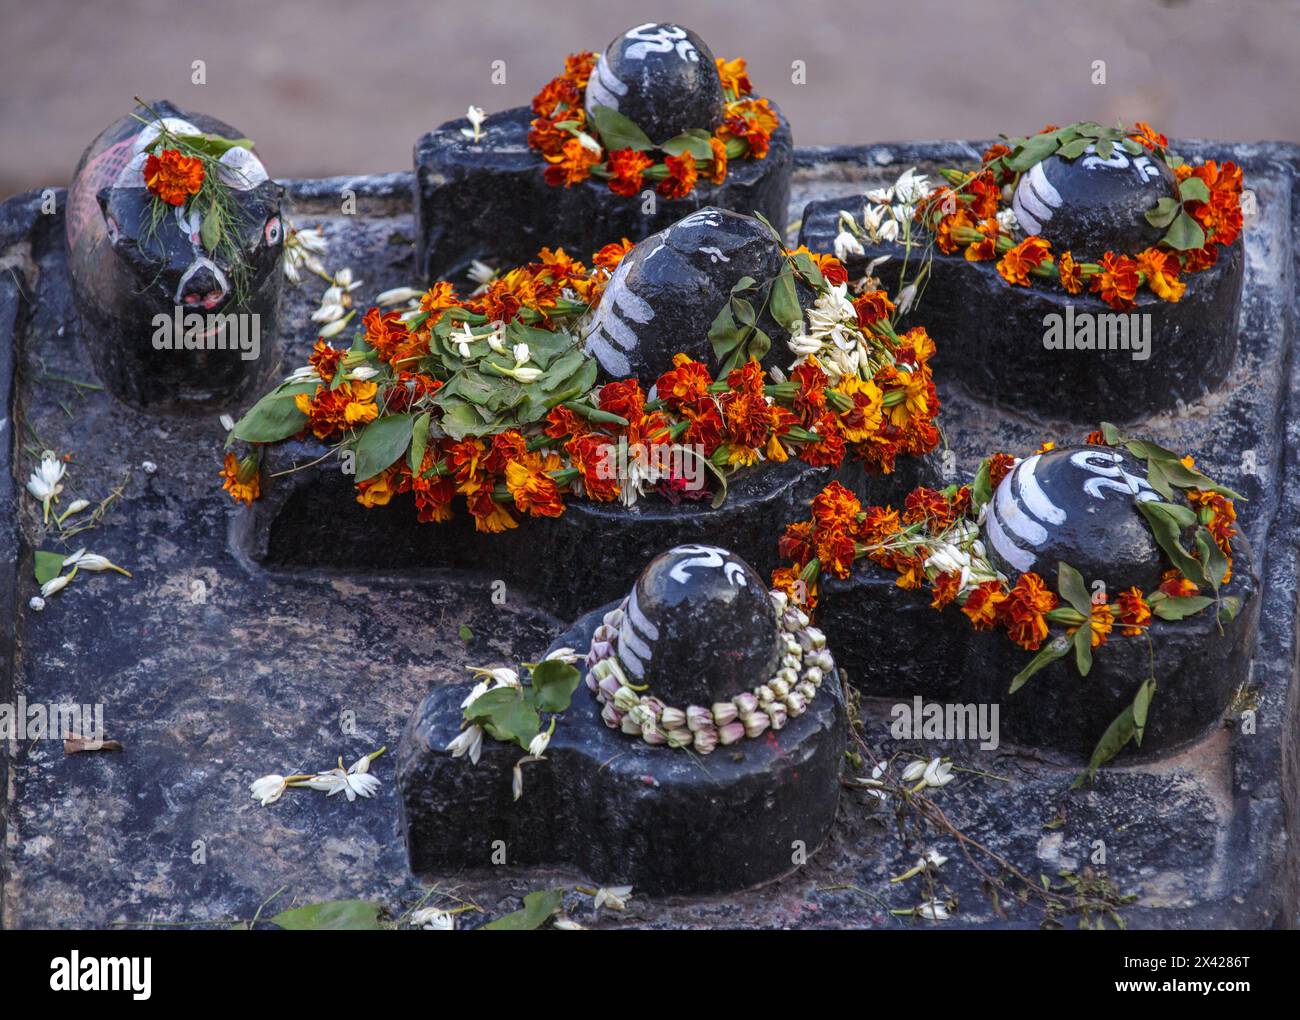 Eine Gruppe von fünf schwarzen Steinlingams und einem schwarzen Steinbullen auf einer Basis aus schwarzem Stein mit Blumengirlanden in Varanasi, Indien. Stockfoto